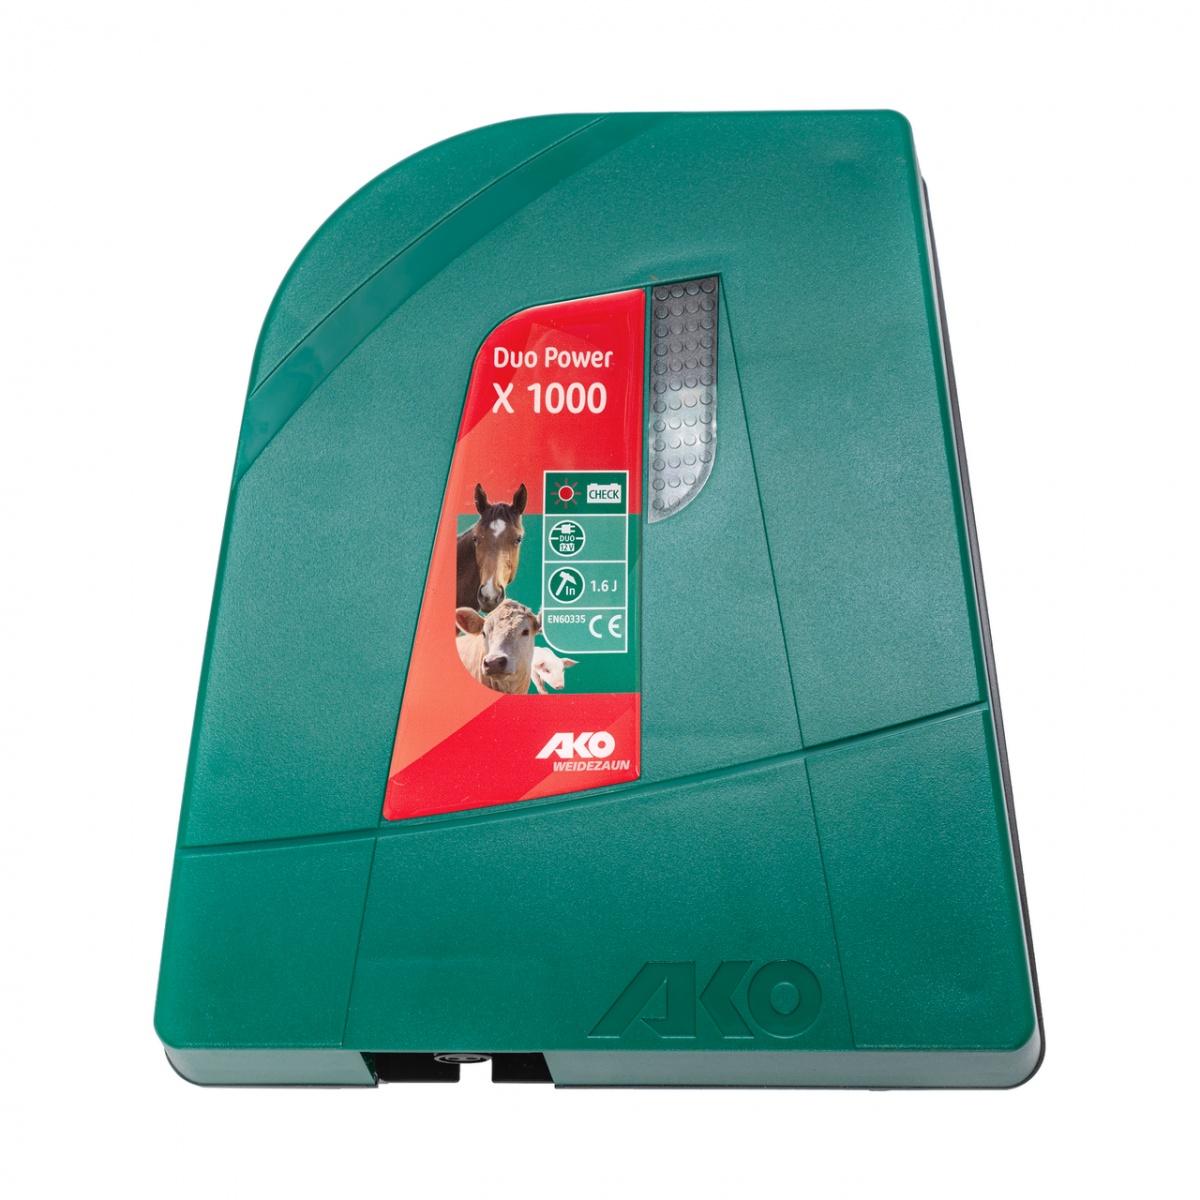 AKO Duo Power X 1000 villanypásztor készülék, 12/230 V, 1 Joule